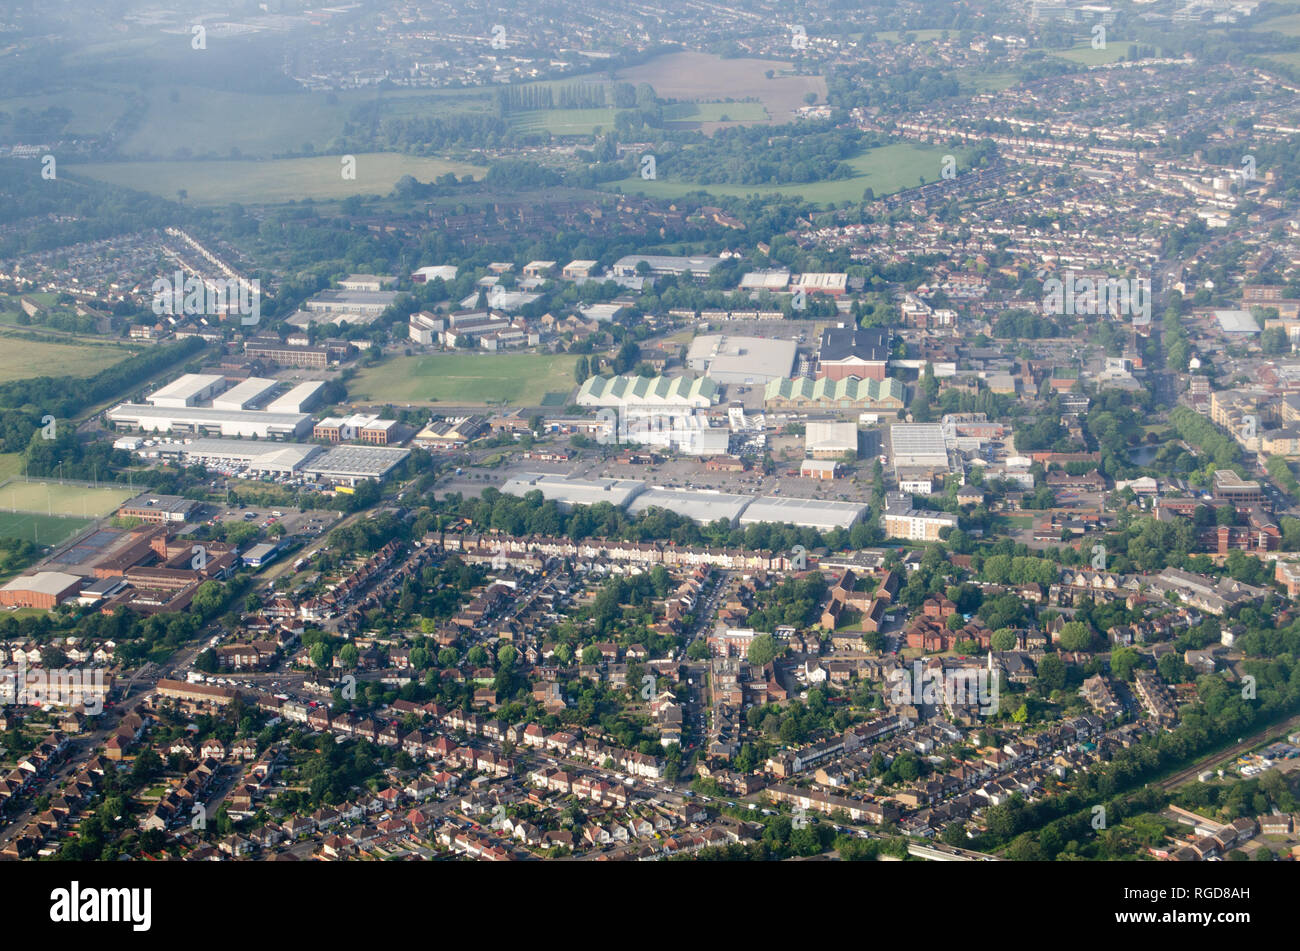 Vue aérienne de Feltham dans le district londonien d'Hounslow. Les toits verts au milieu de l'image font partie de la Collection du renseignement de défense Gr Banque D'Images